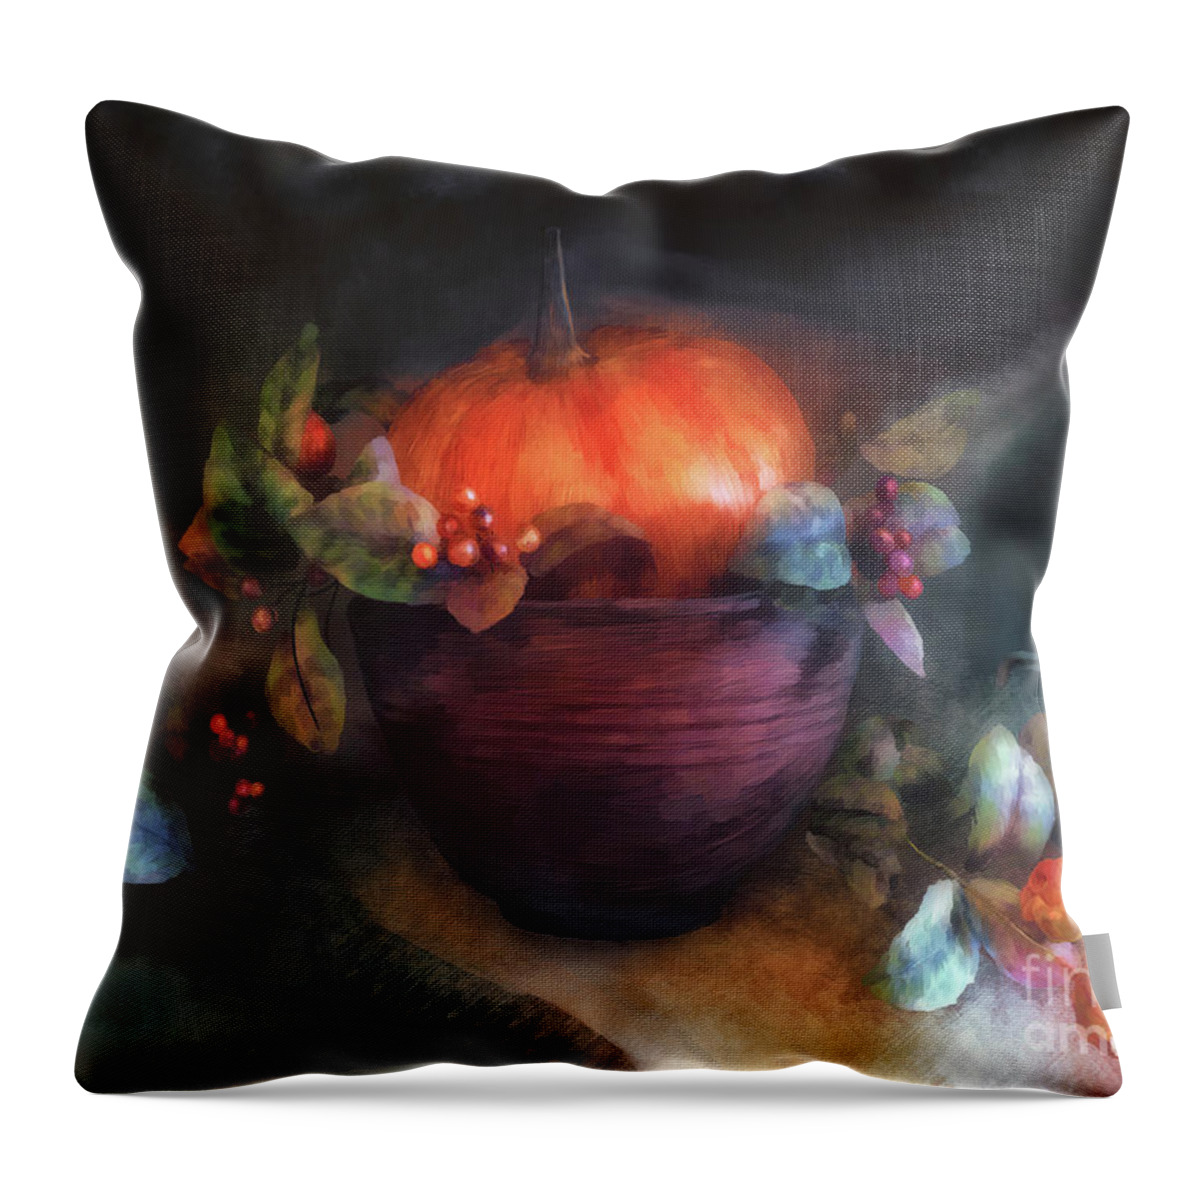 Autumn Throw Pillow featuring the digital art Autumn Centerpiece by Lois Bryan